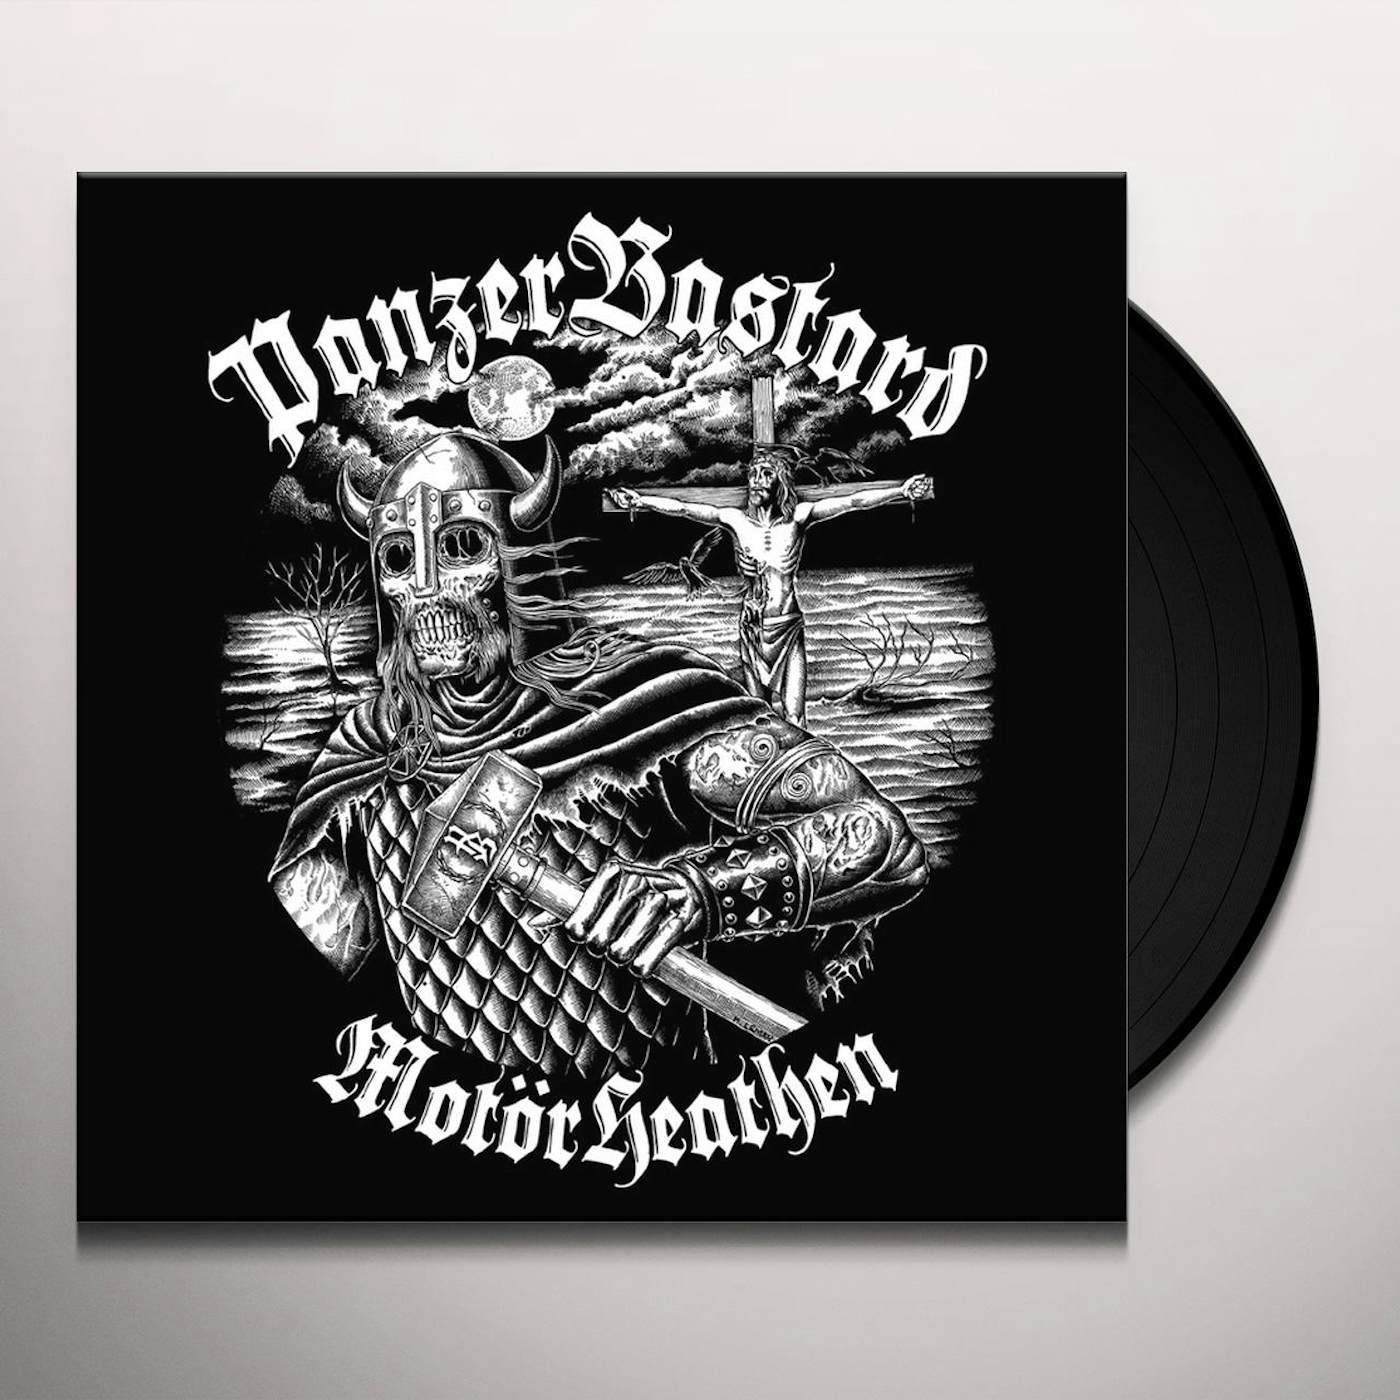 PanzerBastard Motorheathen Vinyl Record